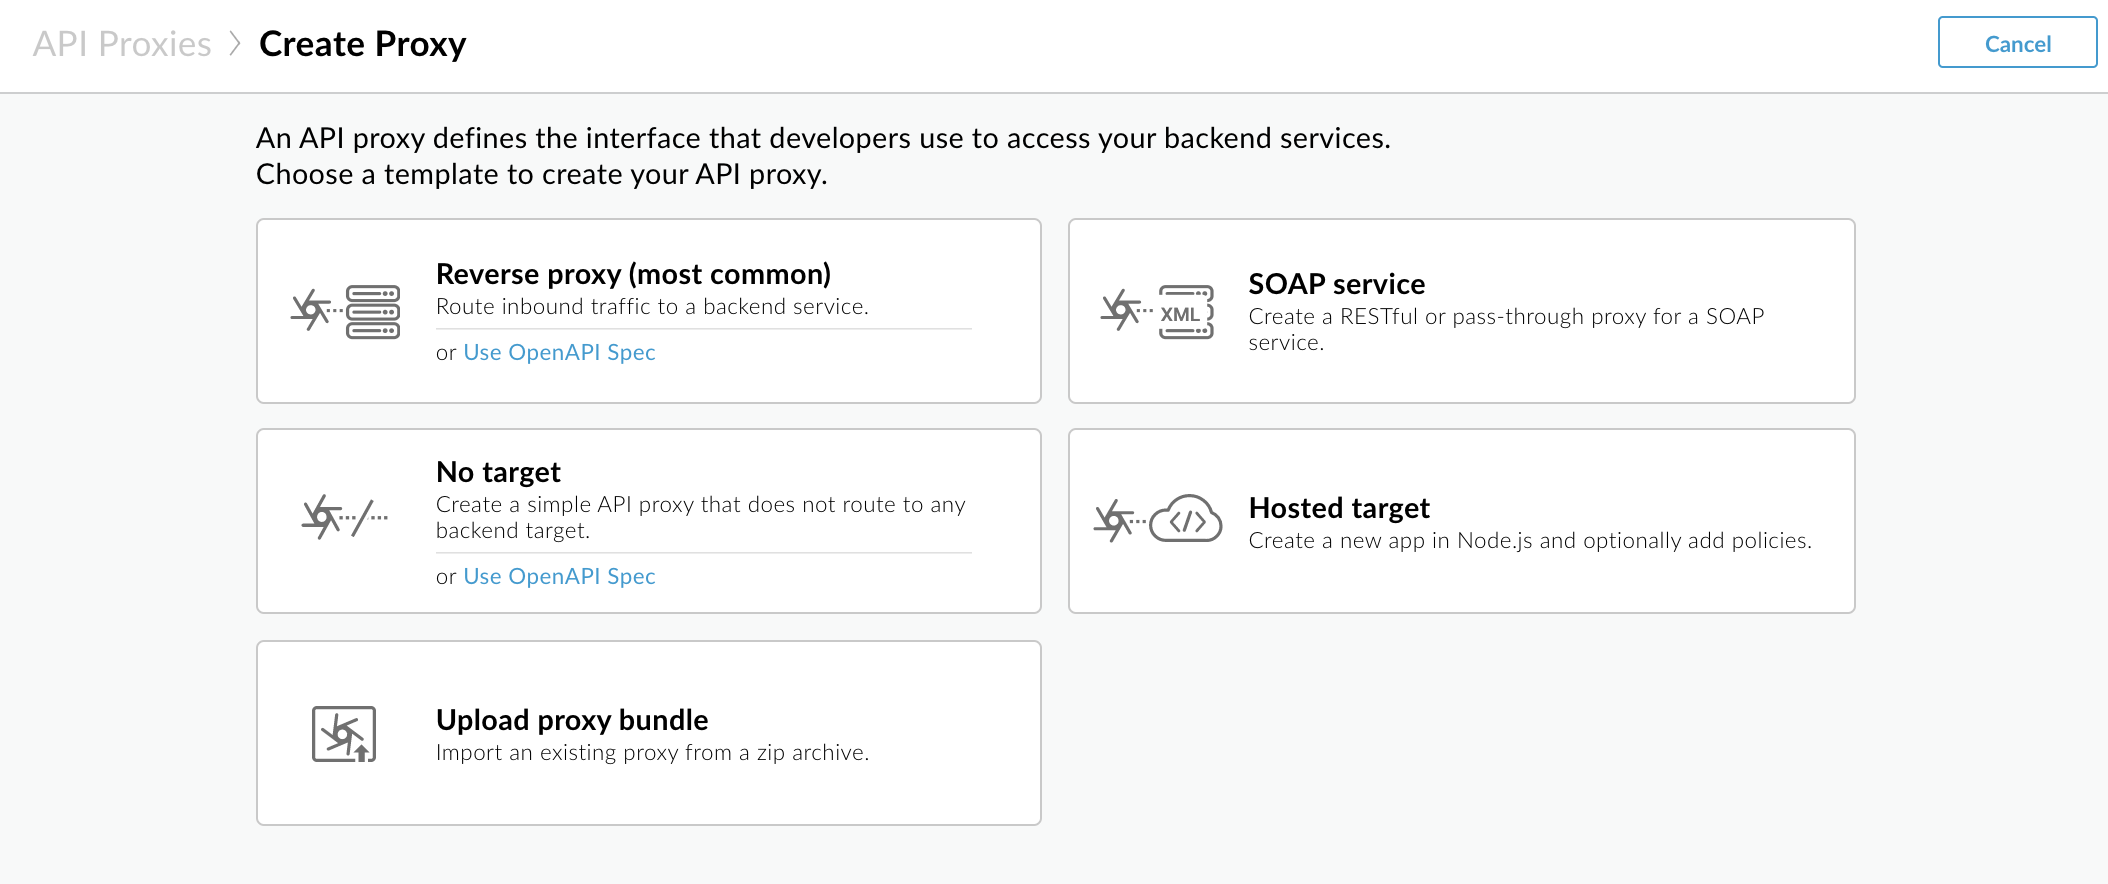 En la primera página del asistente de creación de proxy, se te pedirá que selecciones un proxy inverso, un servicio de SOAP, un proxy sin destino o un paquete de proxy para personalizar el flujo del asistente.